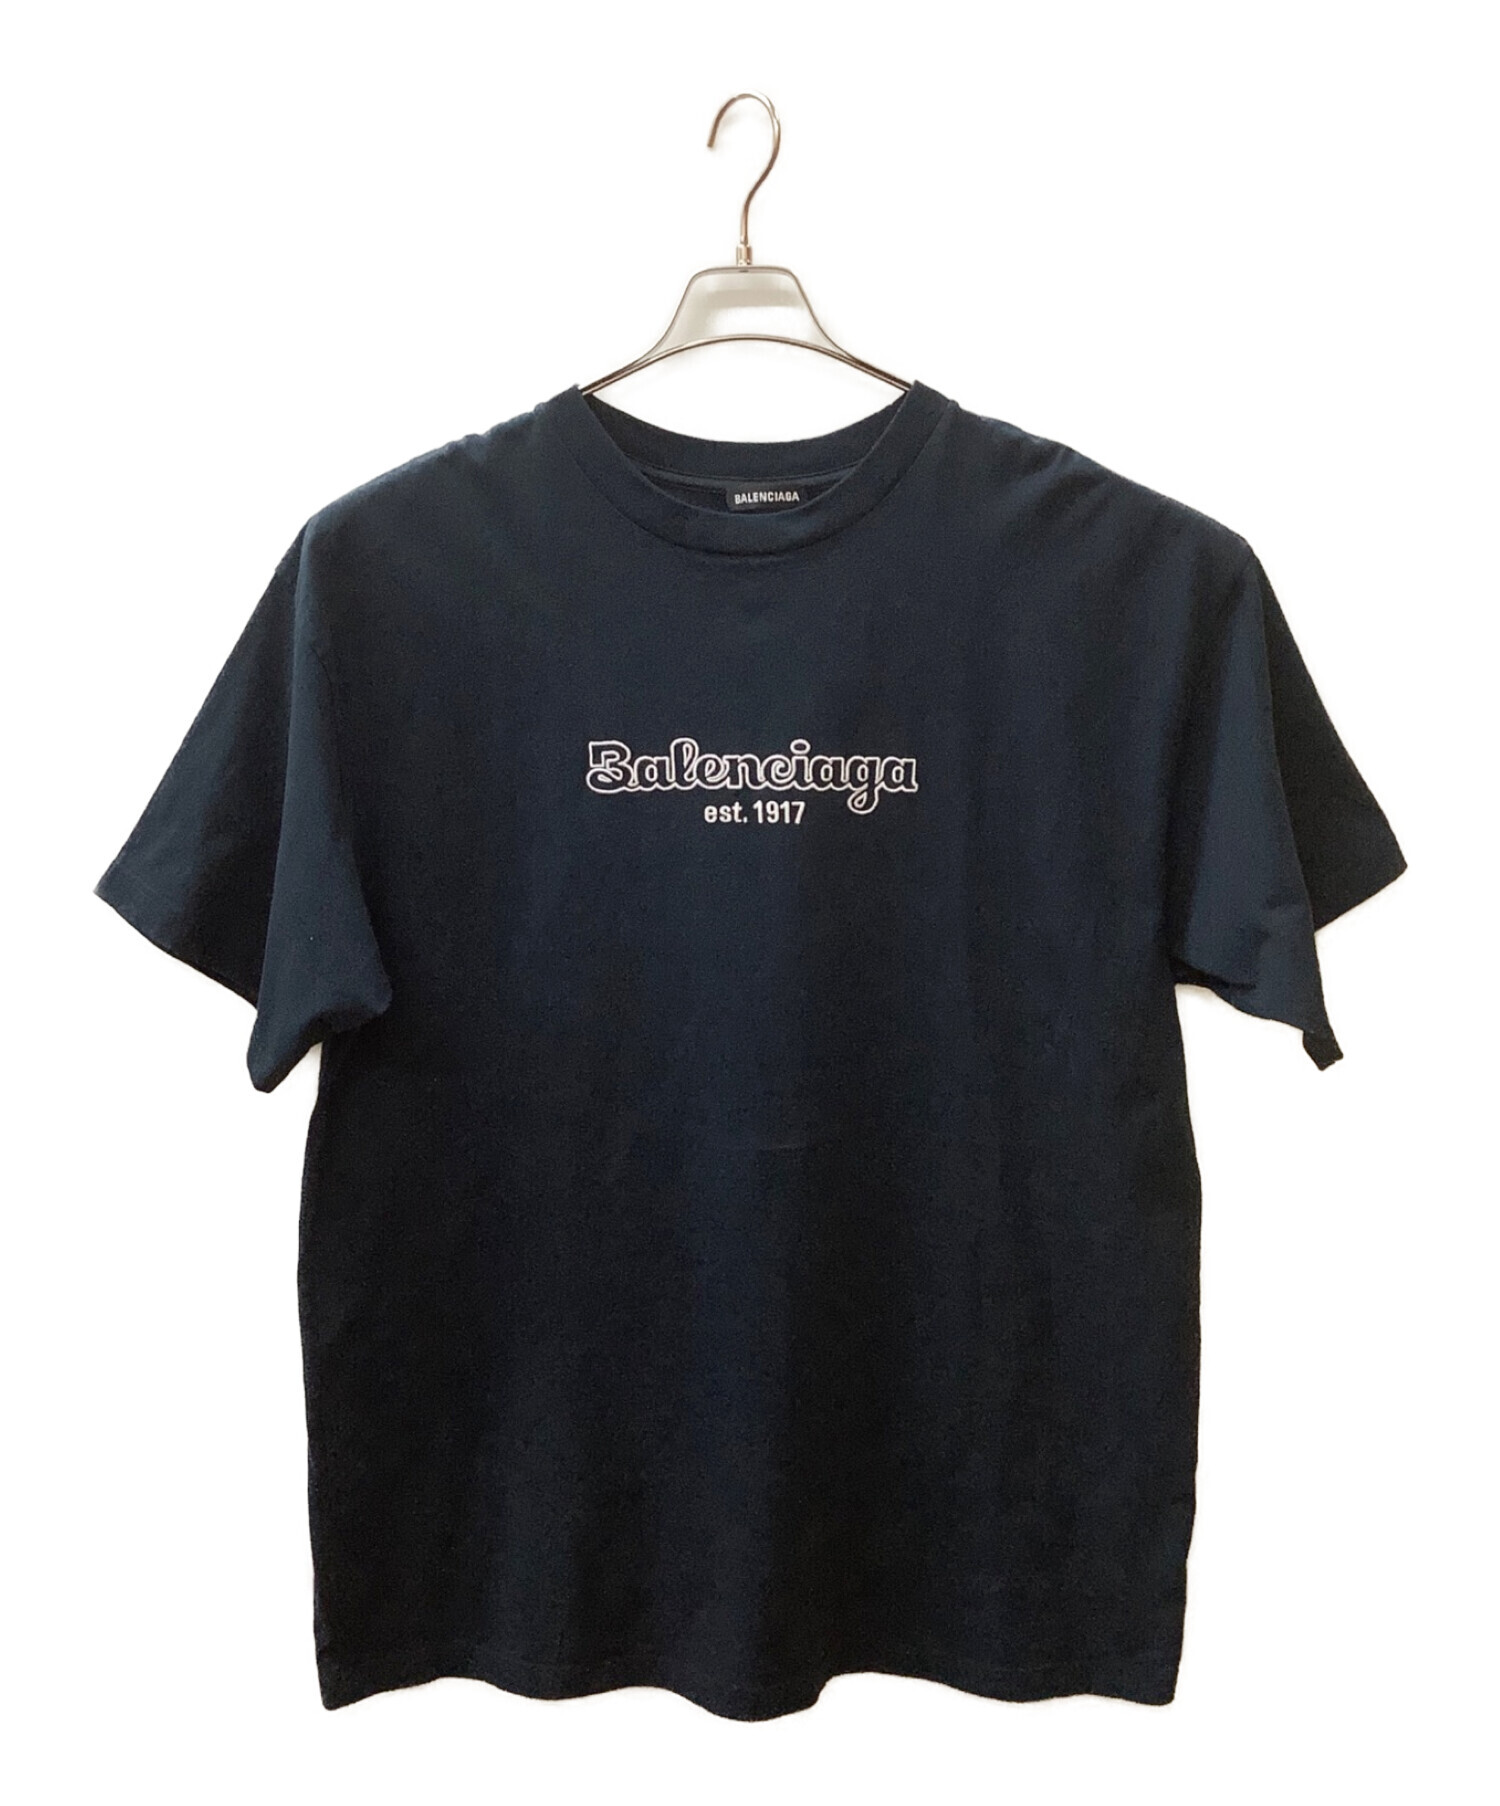 バレンシアガ est.1917 オーバーサイズ Tシャツ - トップス